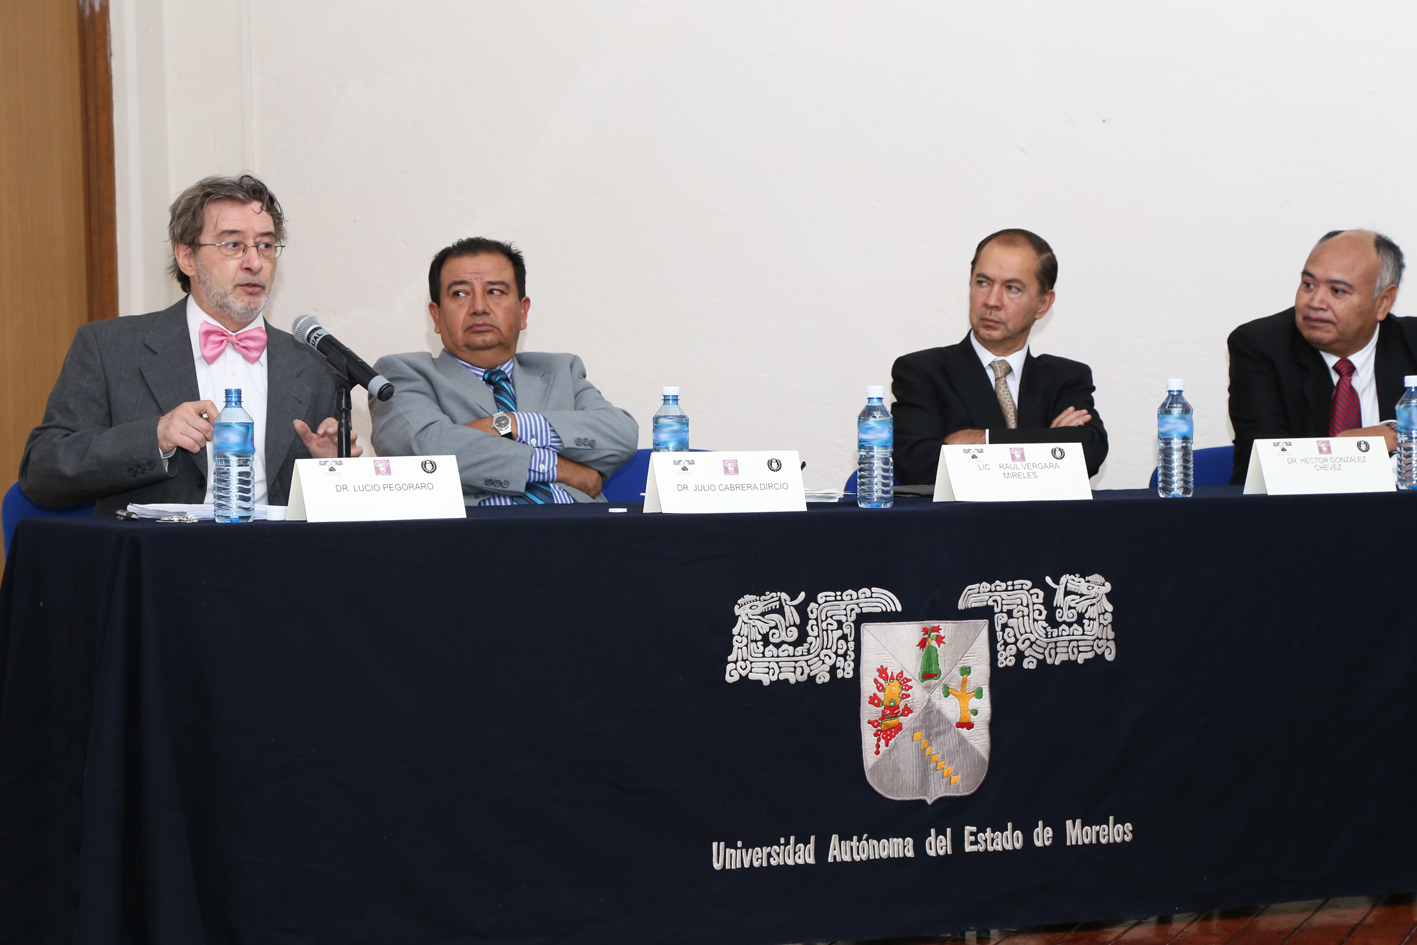 Lucio Pegoraro, Dr. en Derecho, presenta conferencia sobre Derecho Constitucional Comparado